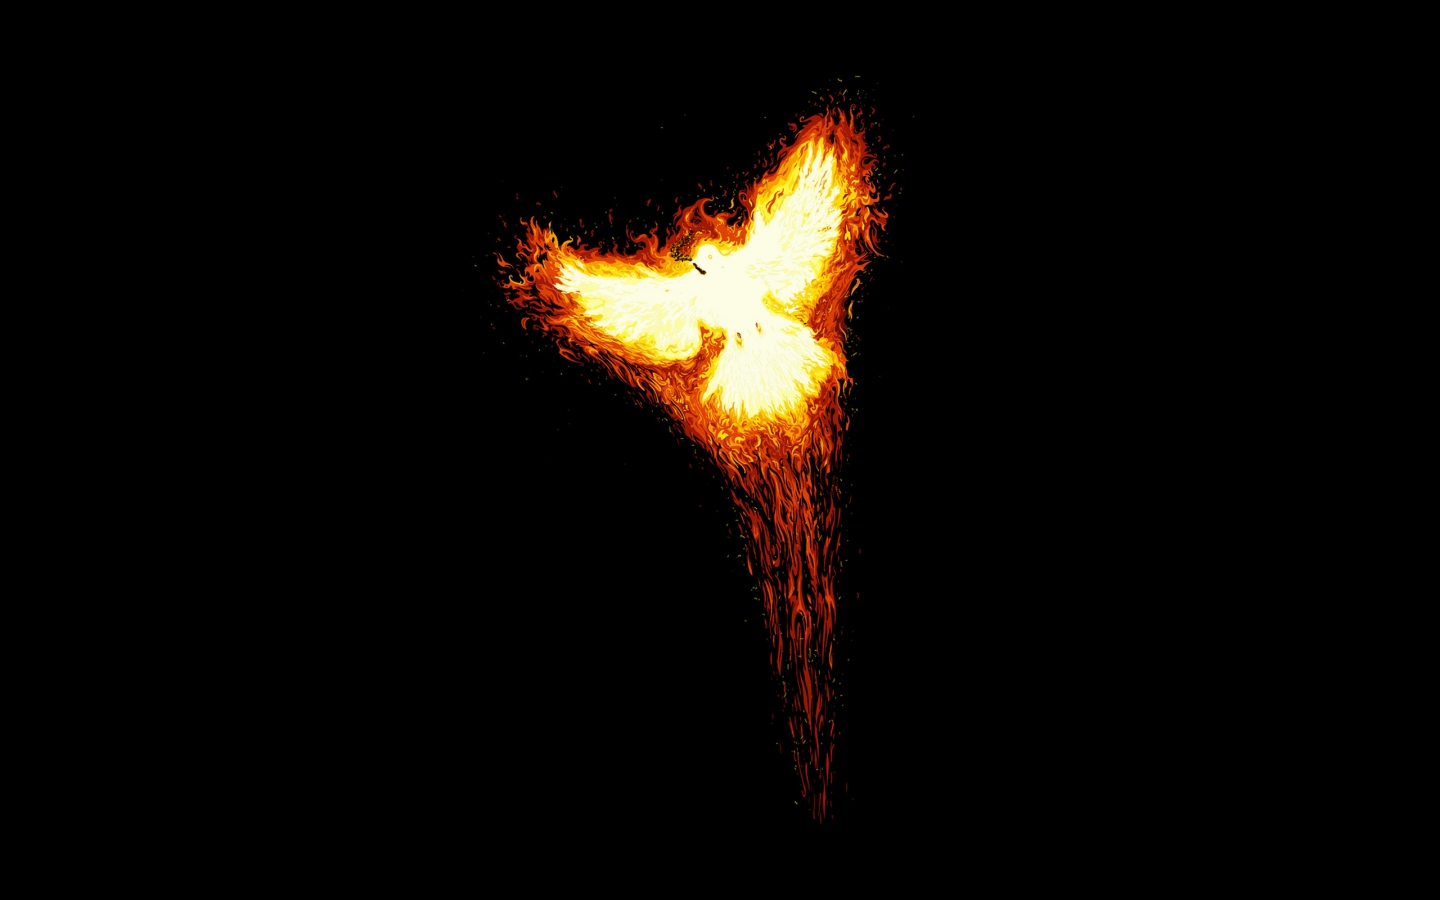 Phoenix Bird for 1440 x 900 widescreen resolution